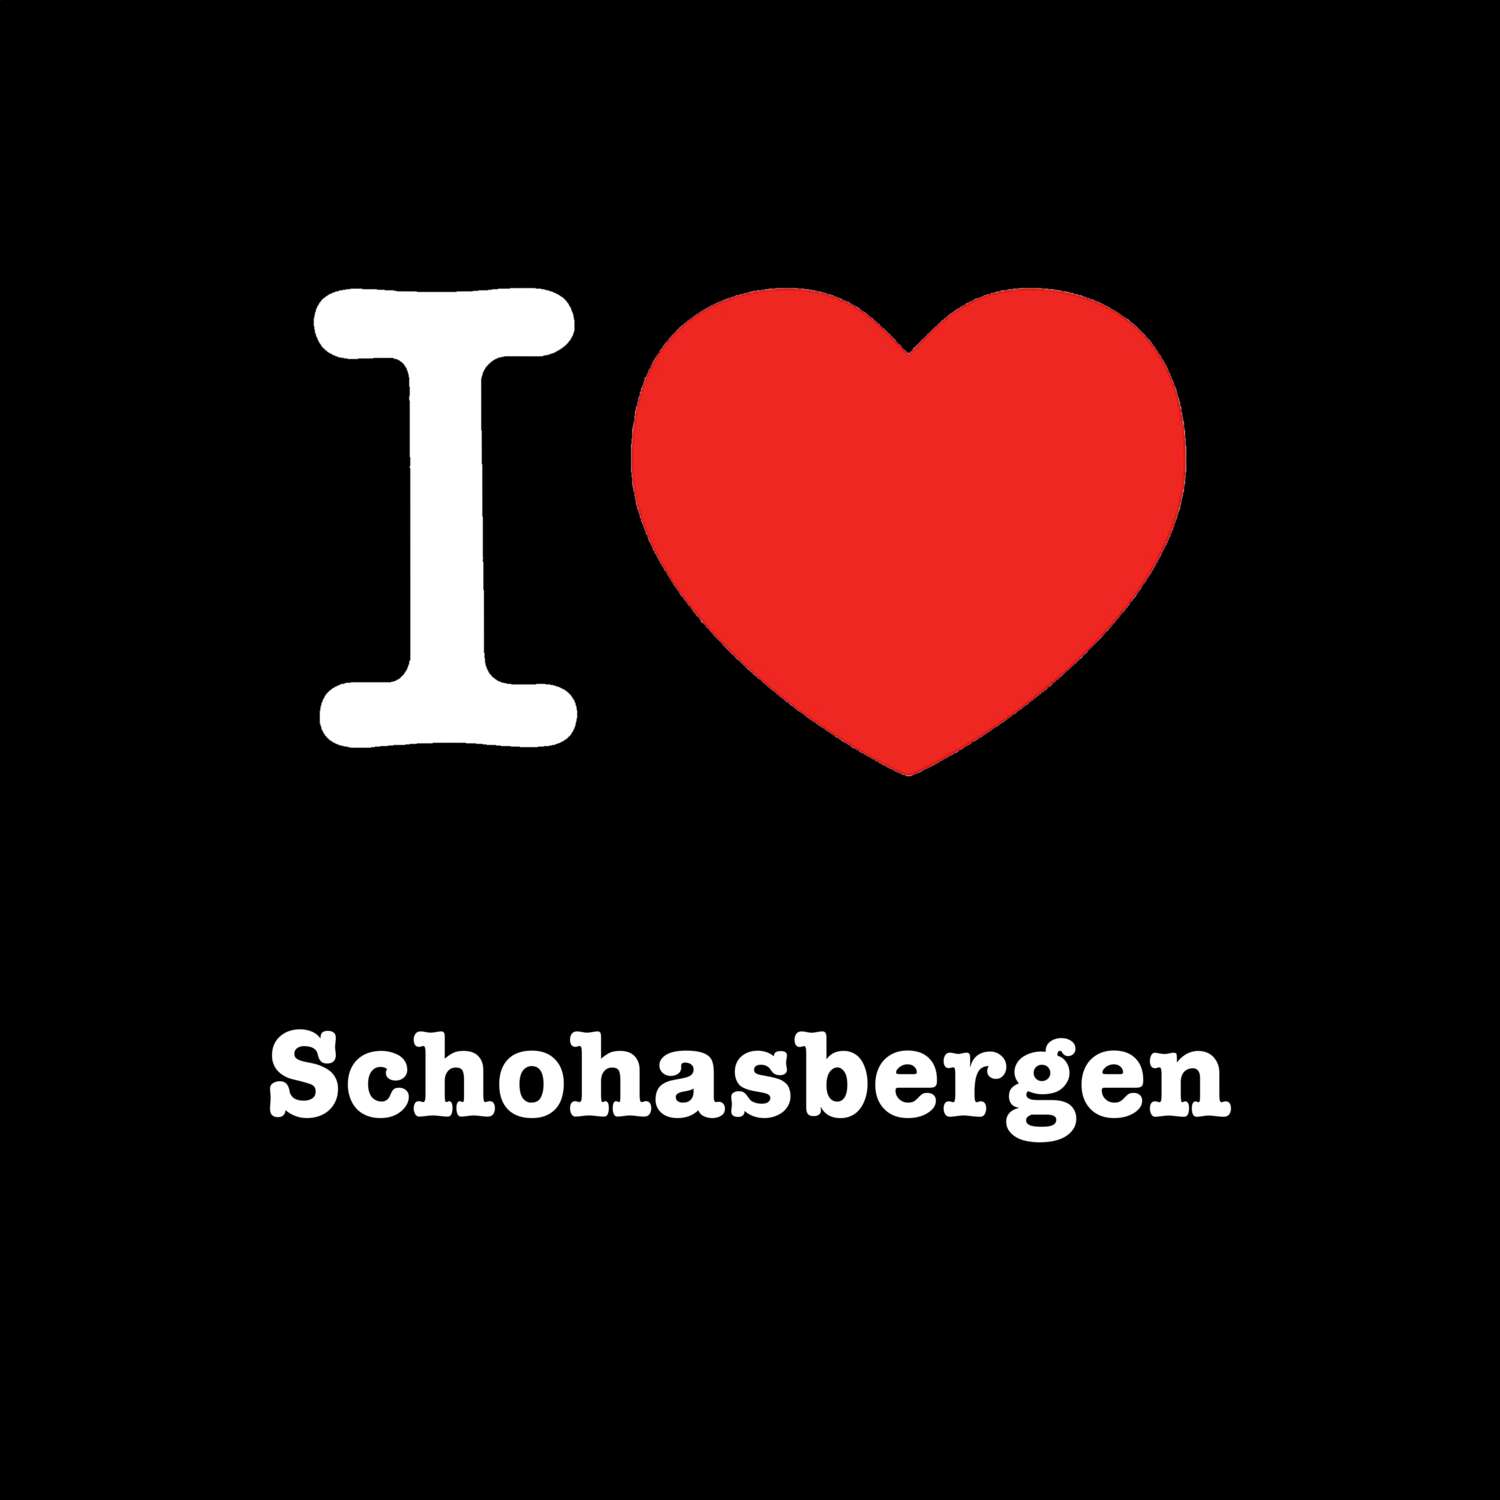 Schohasbergen T-Shirt »I love«